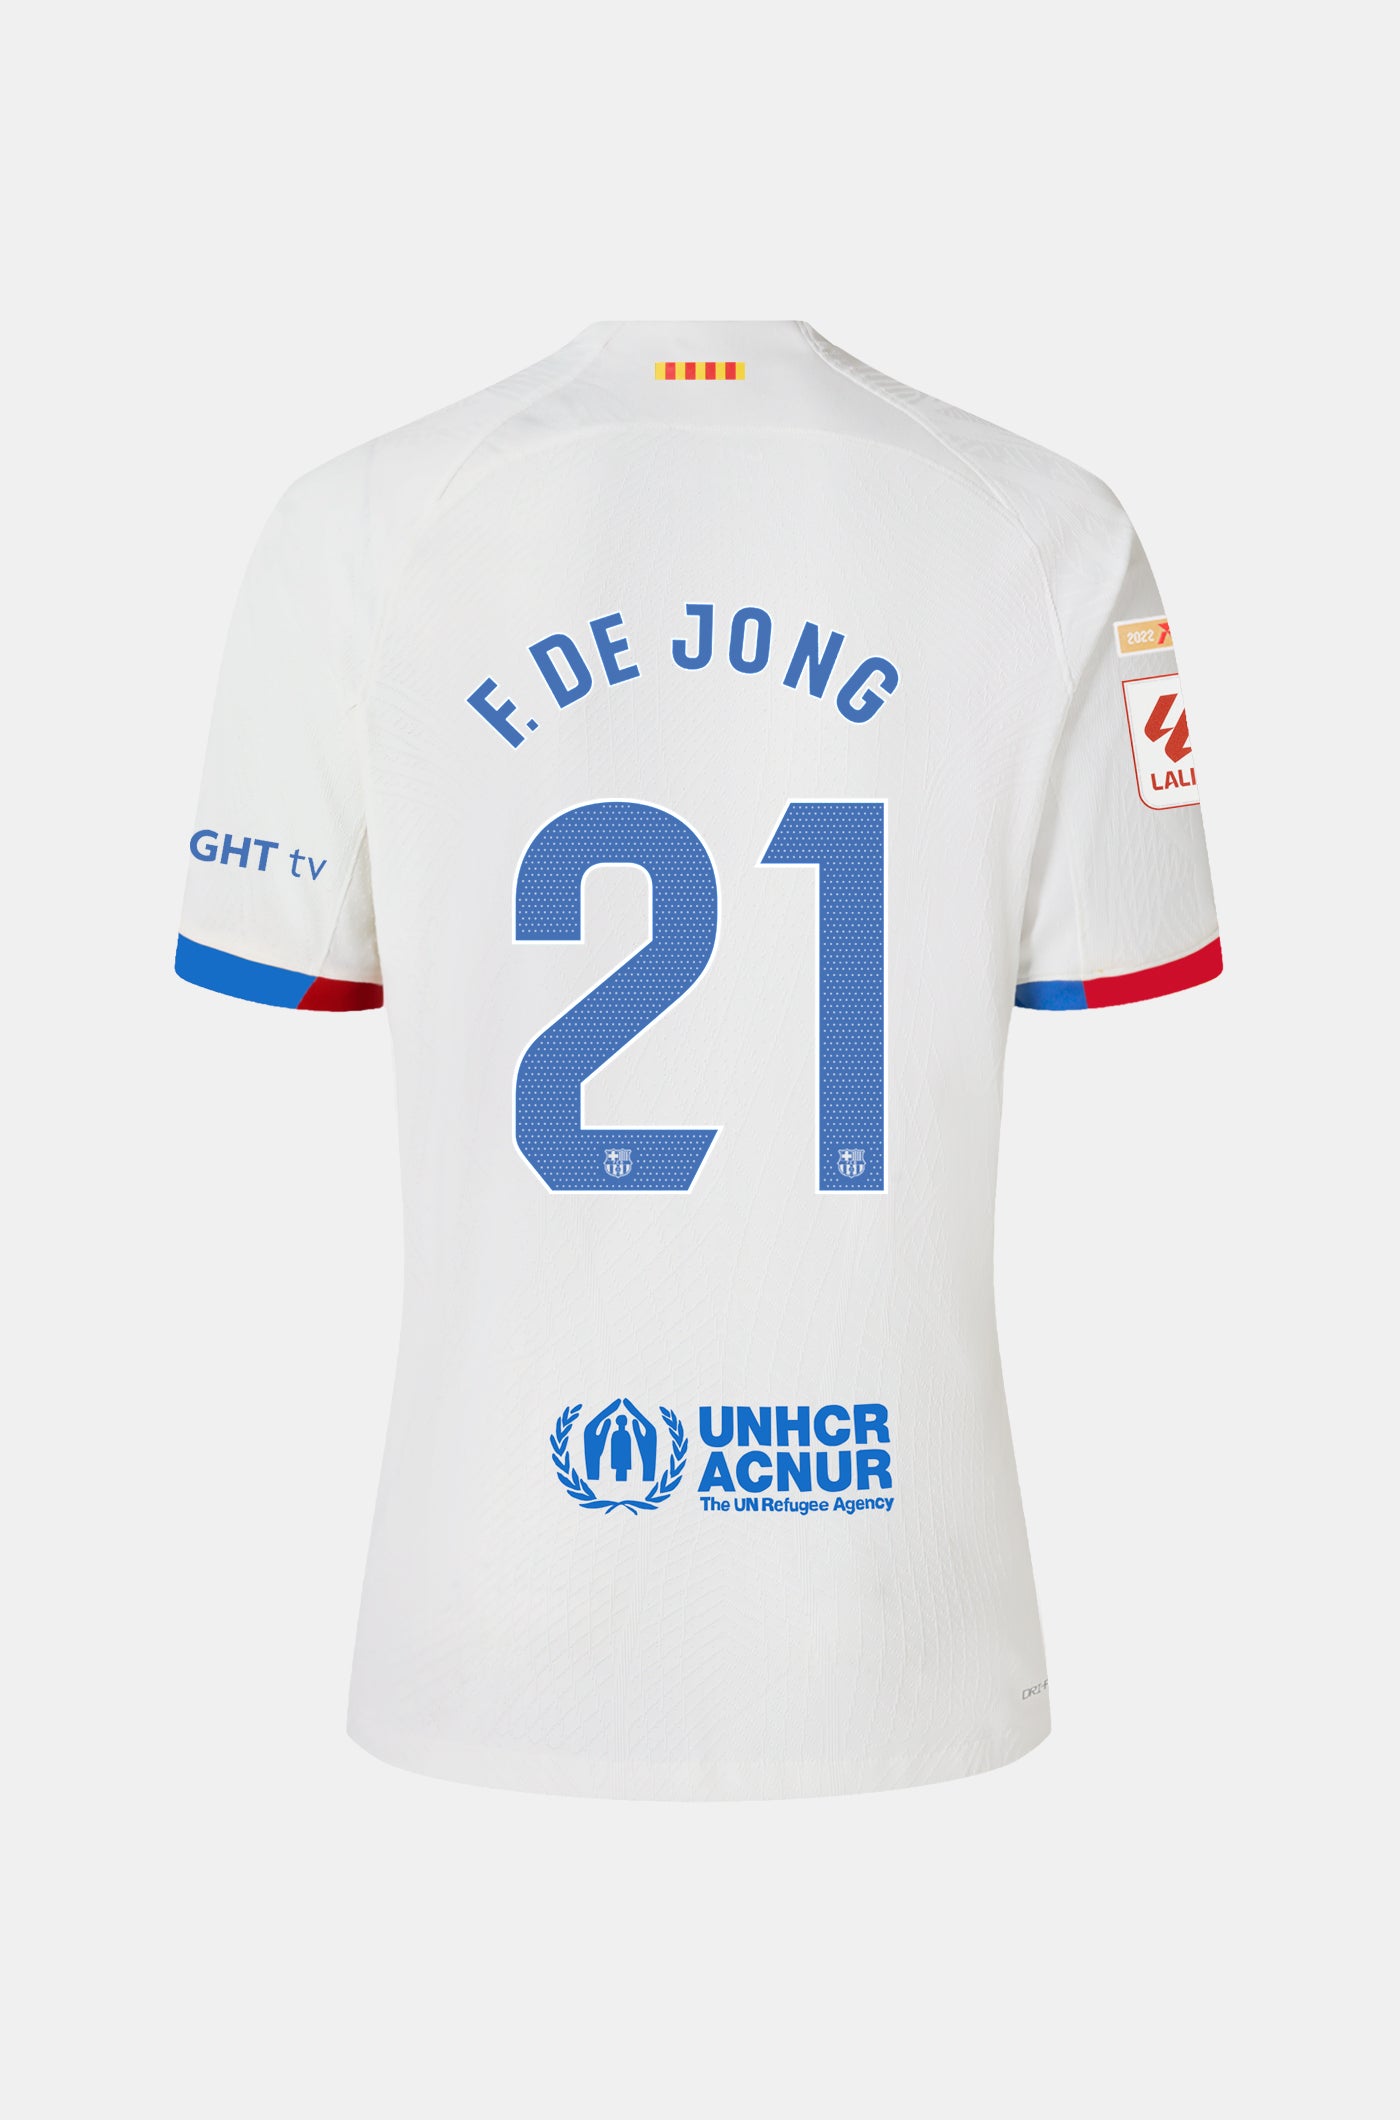 LFP FC Barcelona away shirt 23/24 Player’s Edition  - F. DE JONG